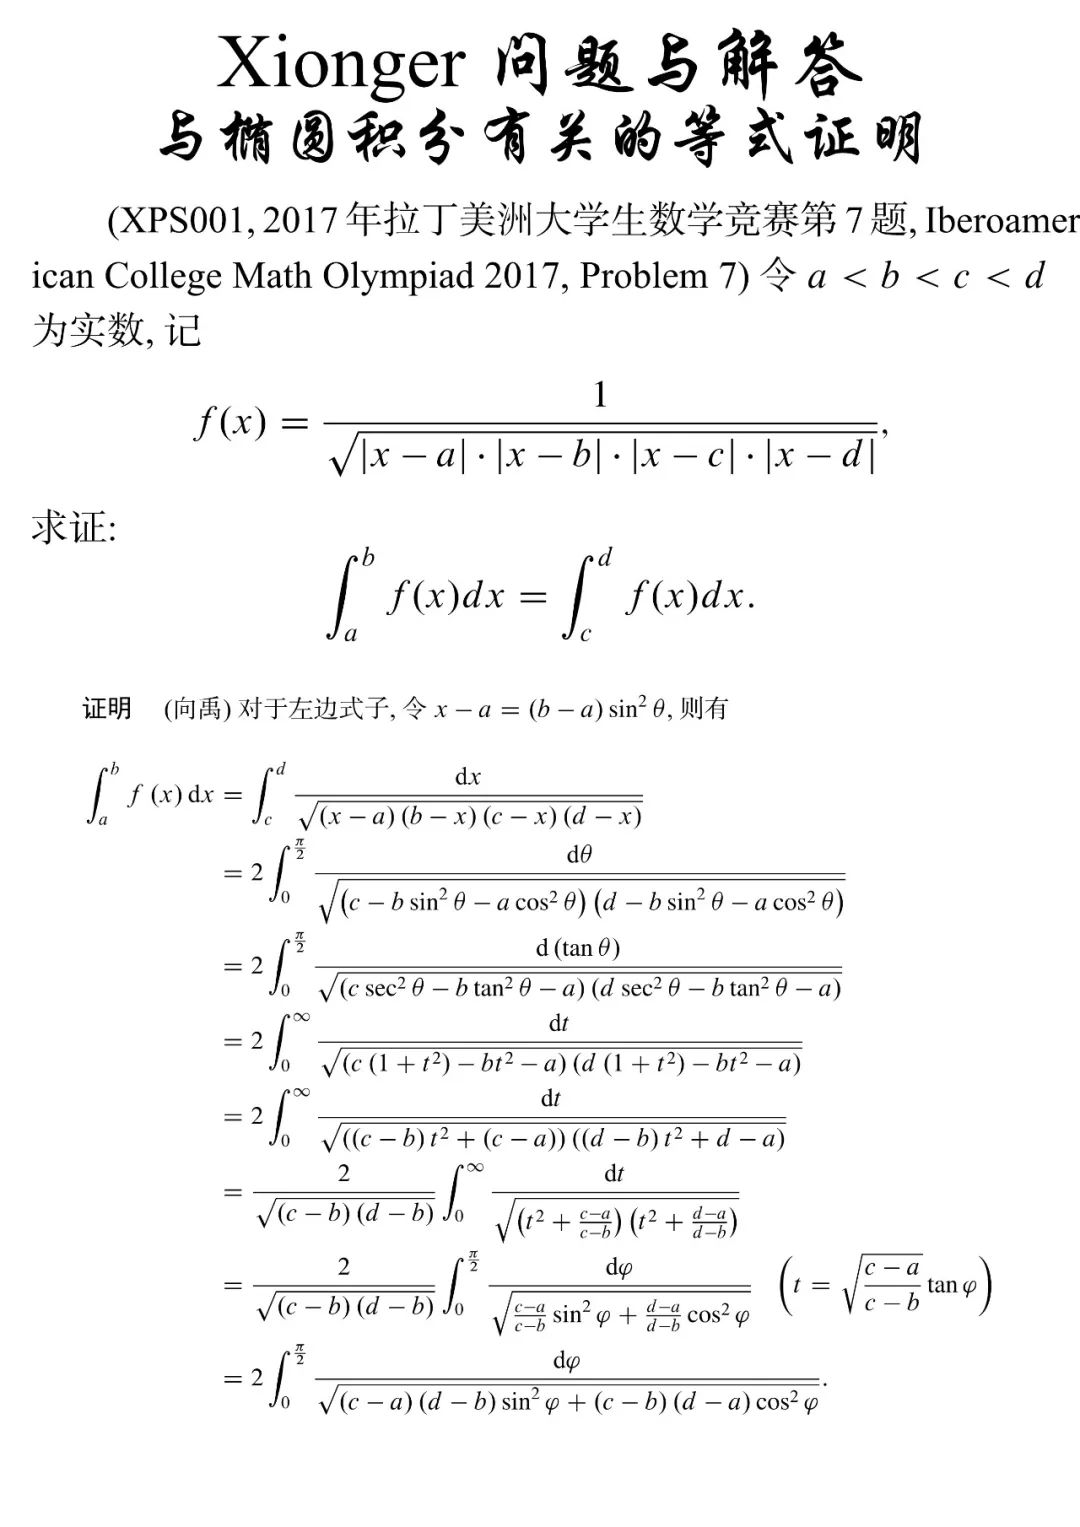 问题与解答 与椭圆积分有关的等式证明 Xionger的数学小屋 微信公众号文章阅读 Wemp